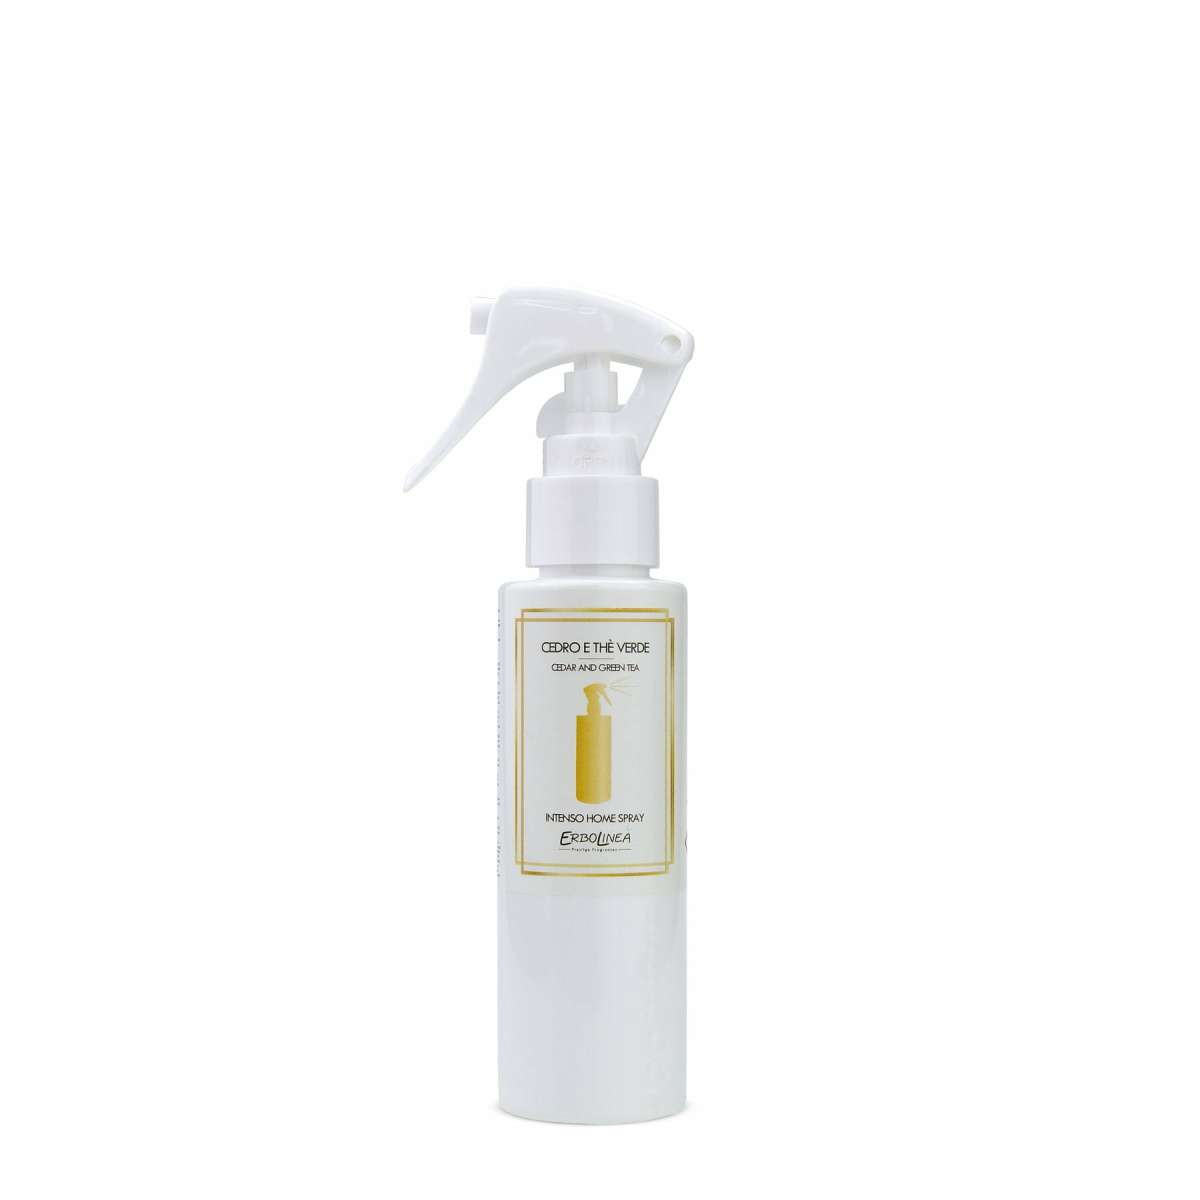 Immagine del prodotto Home Spray per Ambiente Cedro e The Verde 100 ml | Erbolinea Prestige